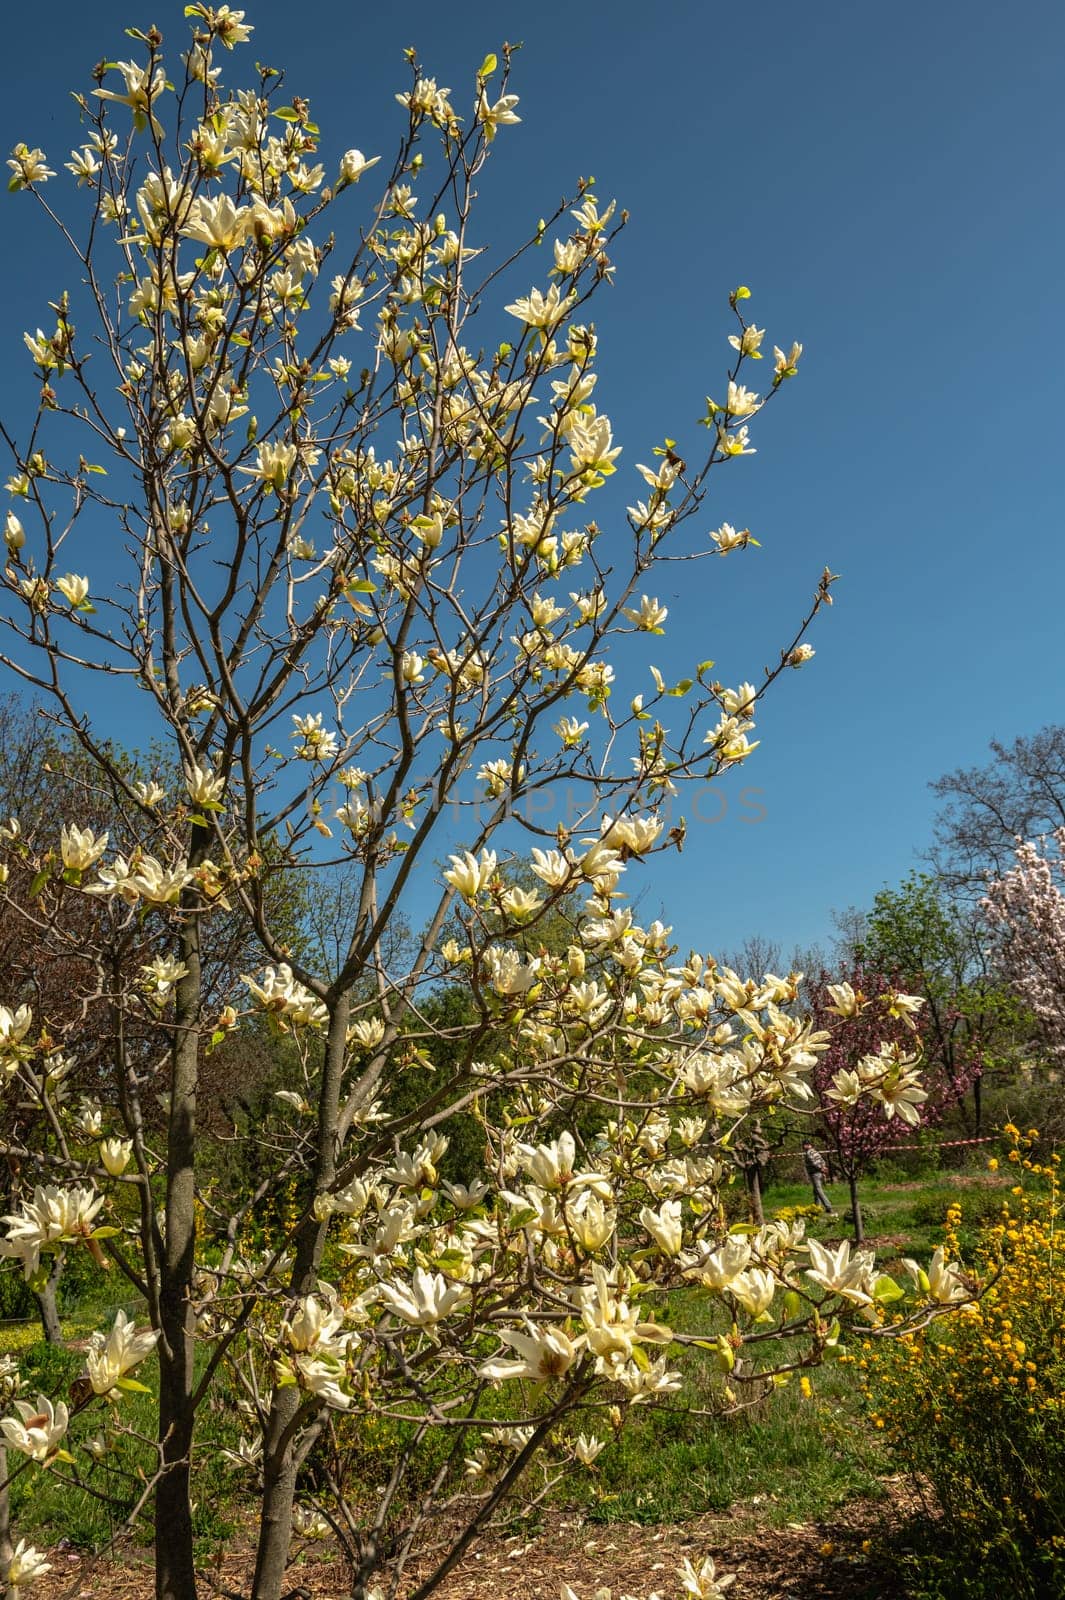 Odessa, Ukraine. Spring flowers and plants in Odessa botanical garden in Ukraine on a sunny day